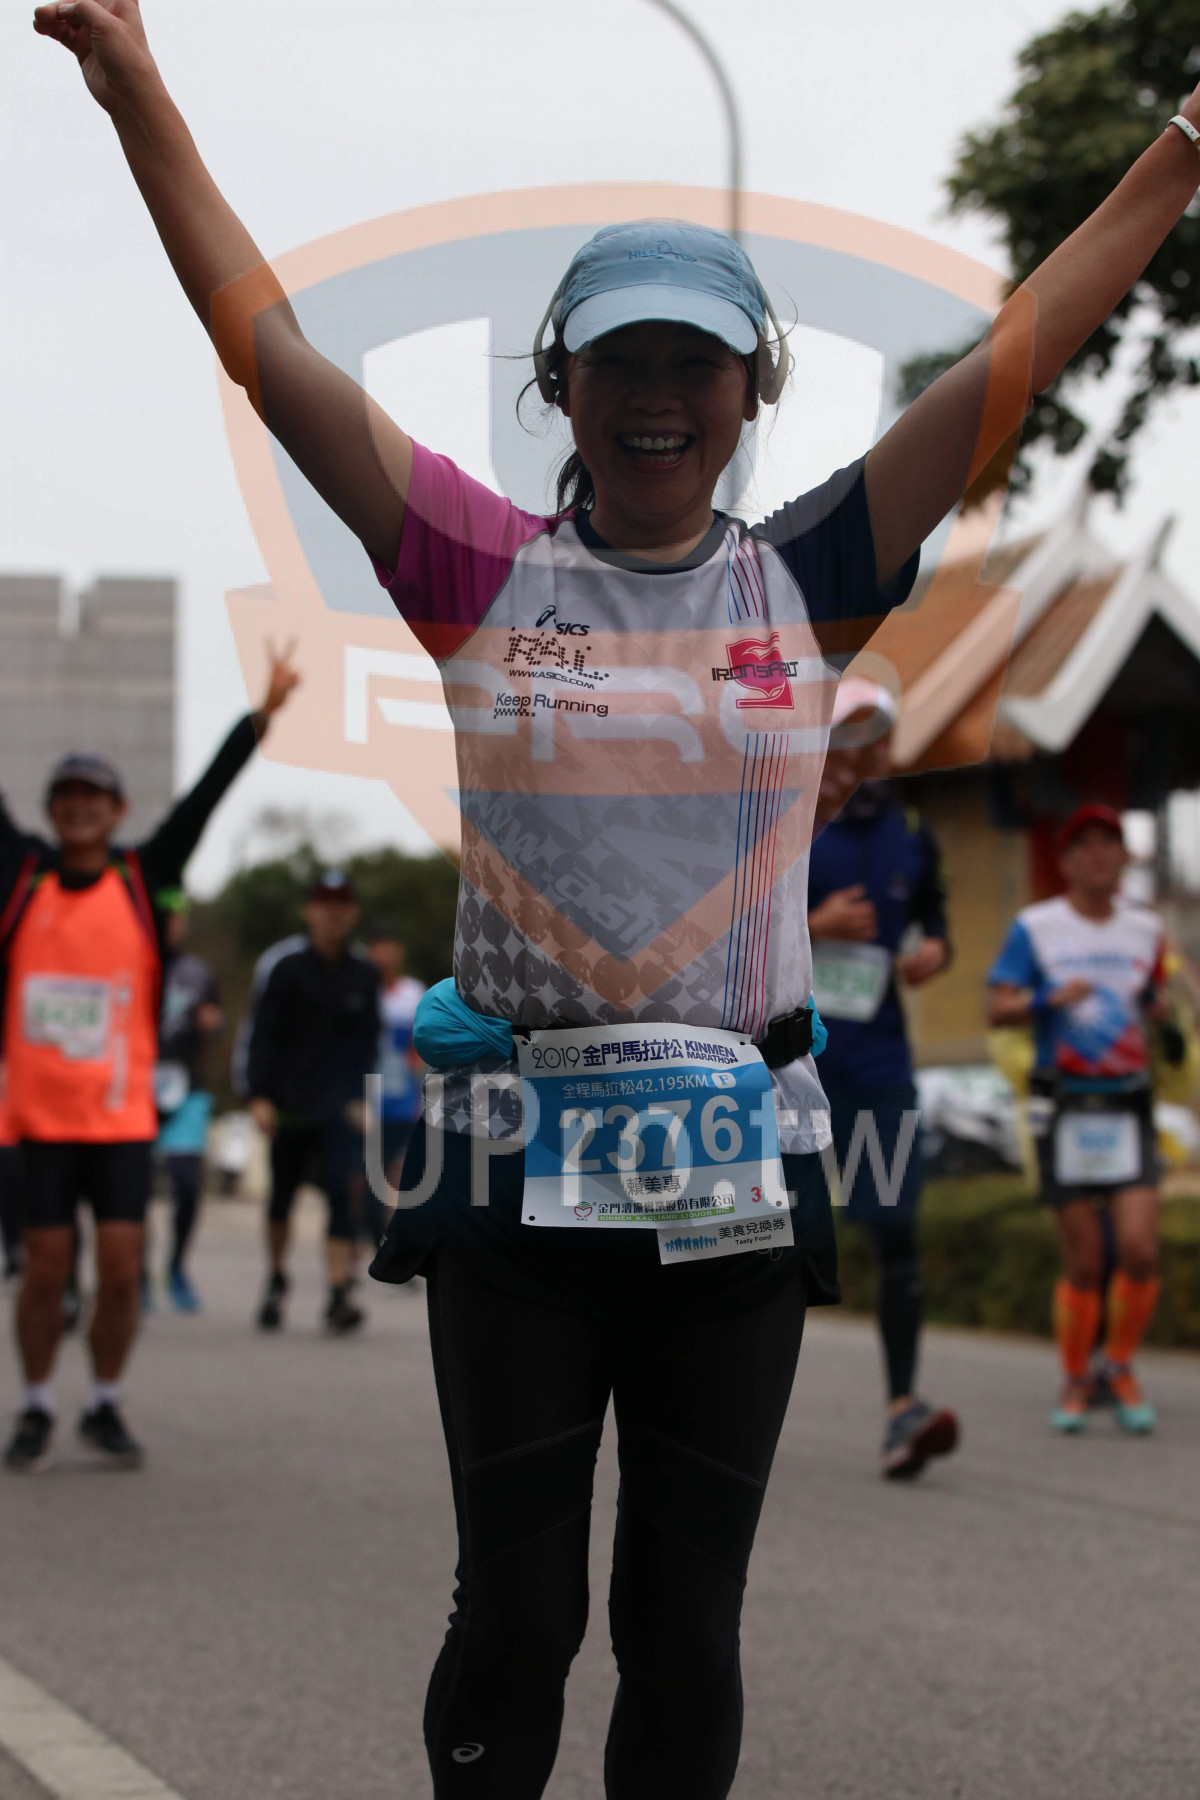 Keep Running,·201951:,42.195 KM,2376,,ず,,,mhthfry |